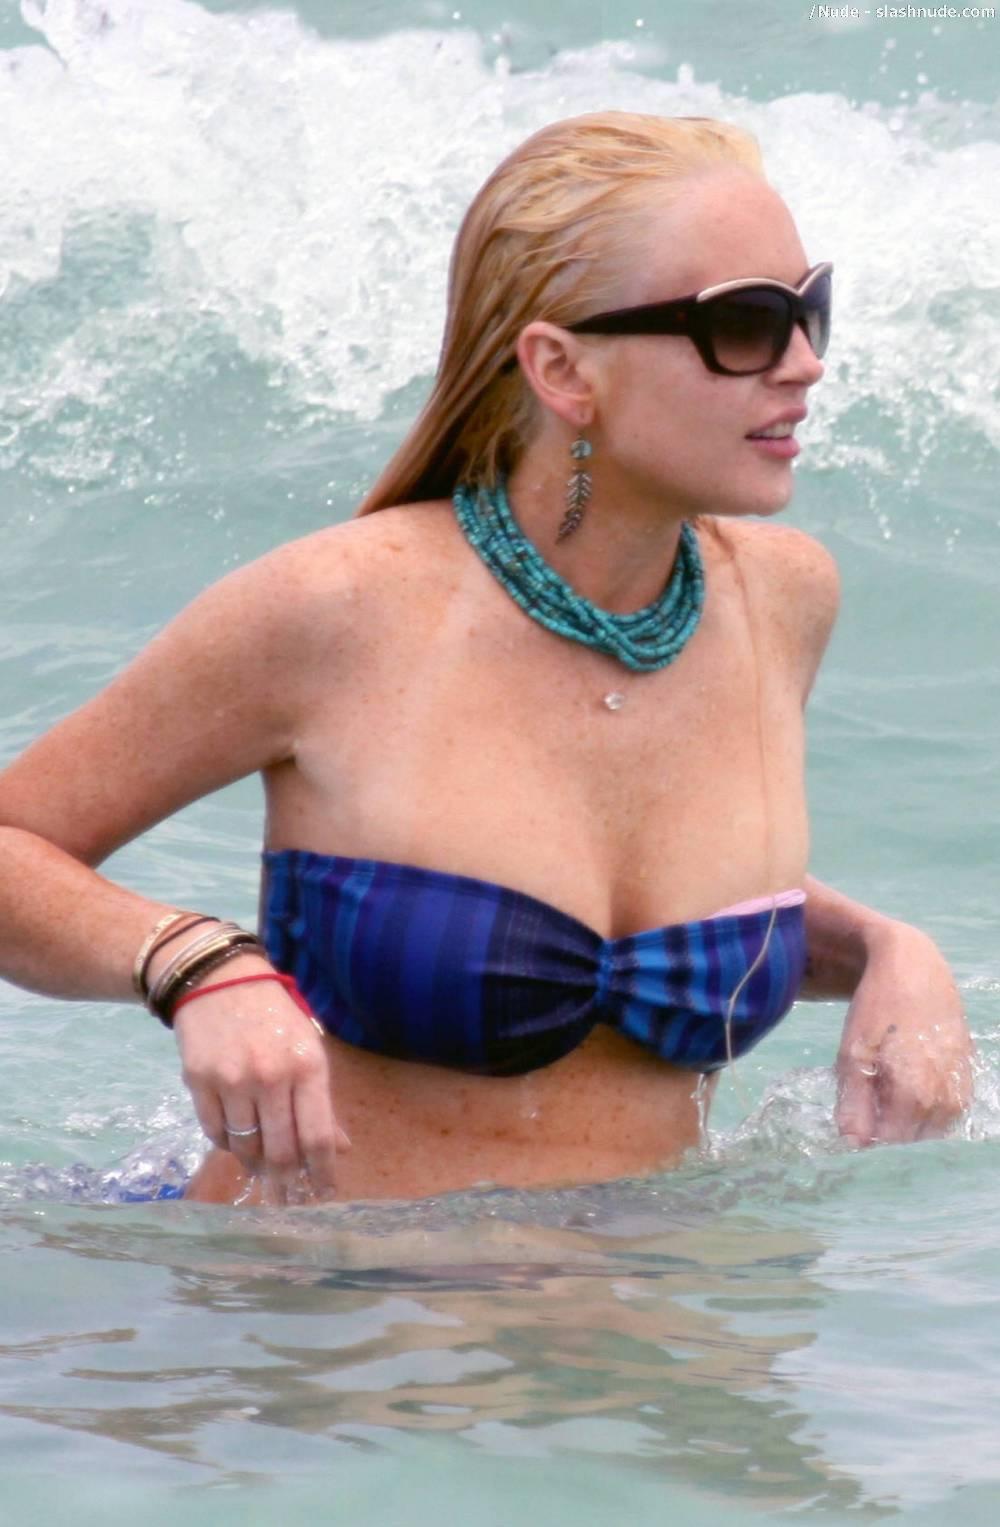 Lindsey-Lohan-Boob-Sleep-of-her-Bikini-in-Miami-1.jpg